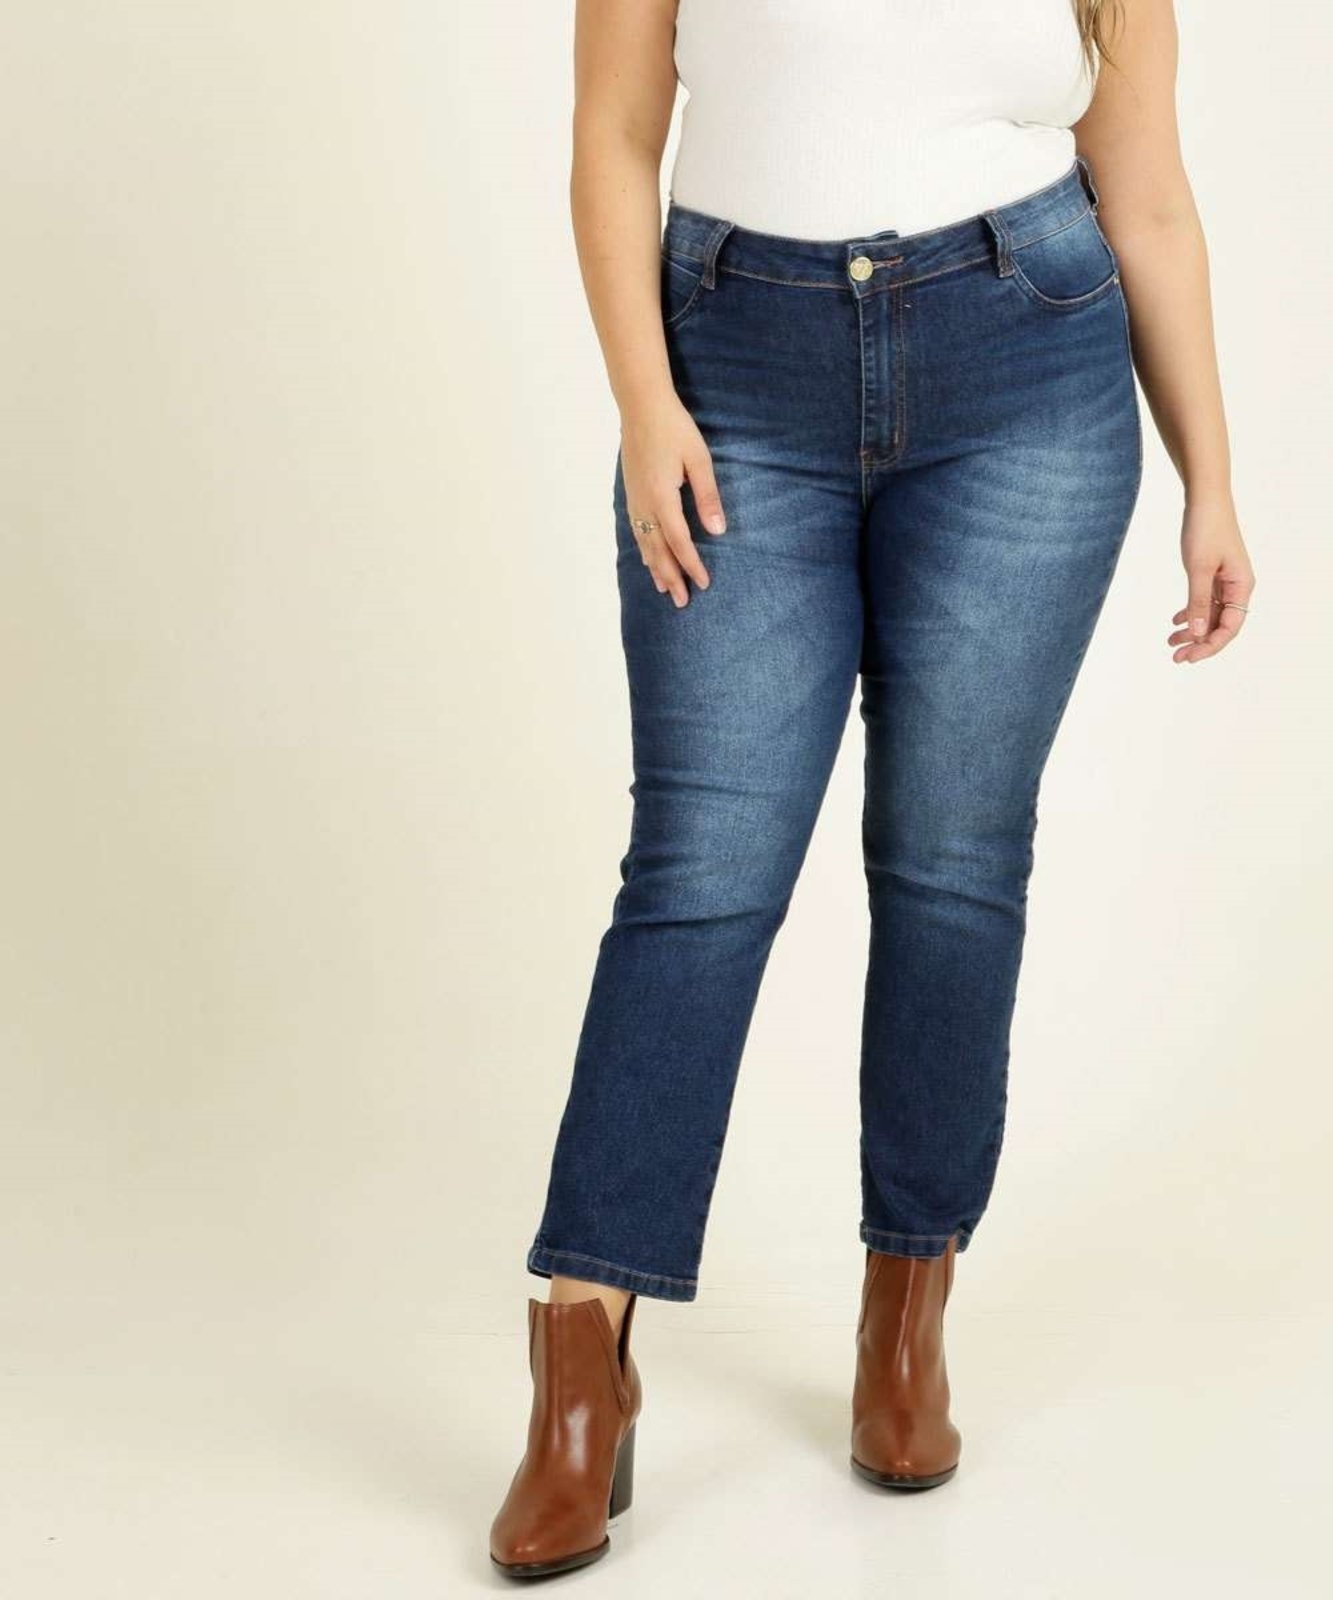 CAPRI SPECIAL C/BOTOES - Loony Jeans - Moda Feminina Plus Size e